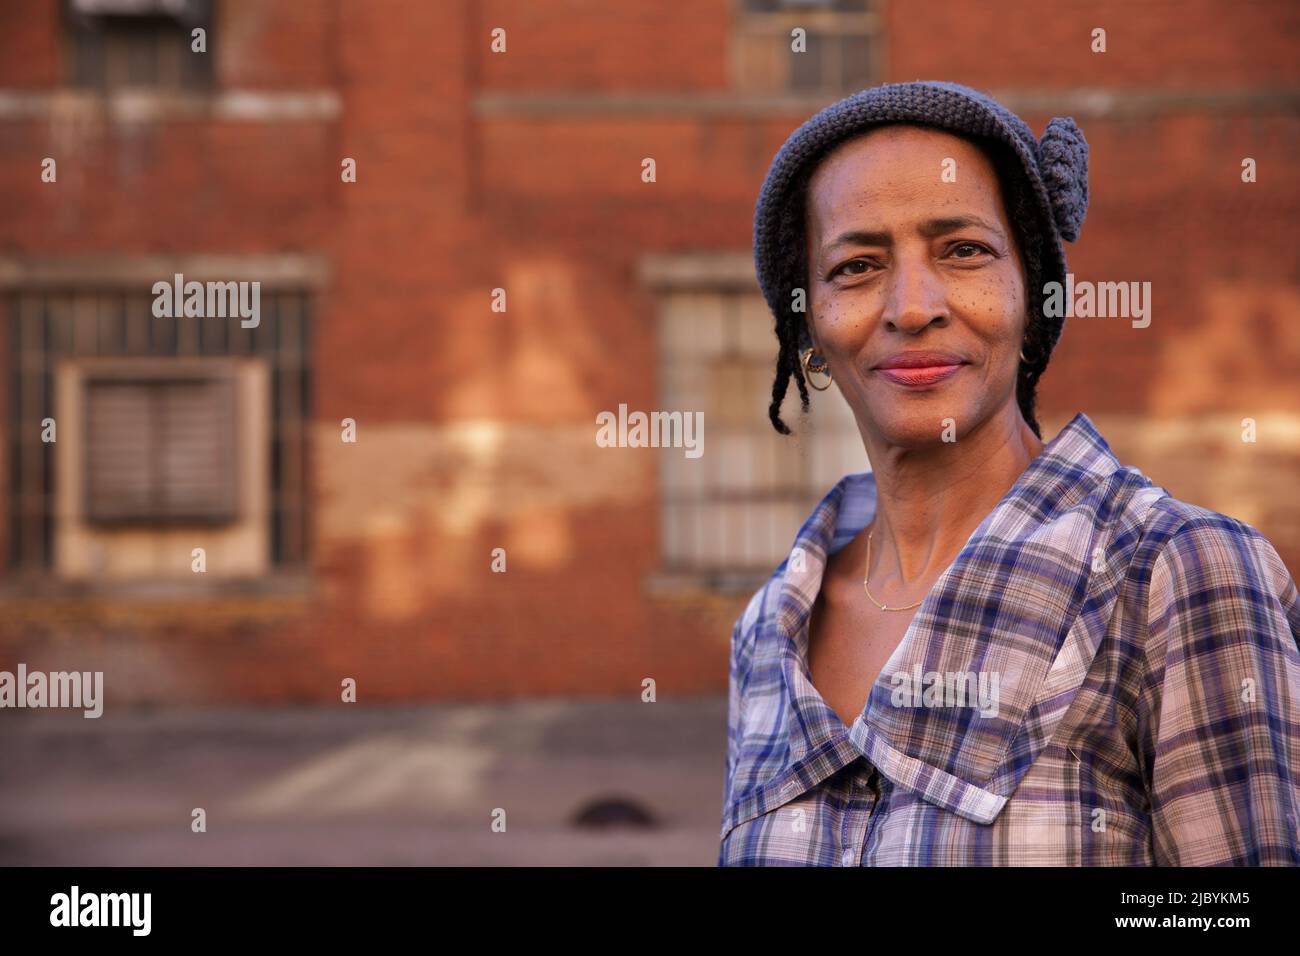 Porträt einer älteren Frau mit Strickmütze, die lächelnd in einer Gasse steht und die Kamera anschaut, Backsteinmauer im Hintergrund Stockfoto